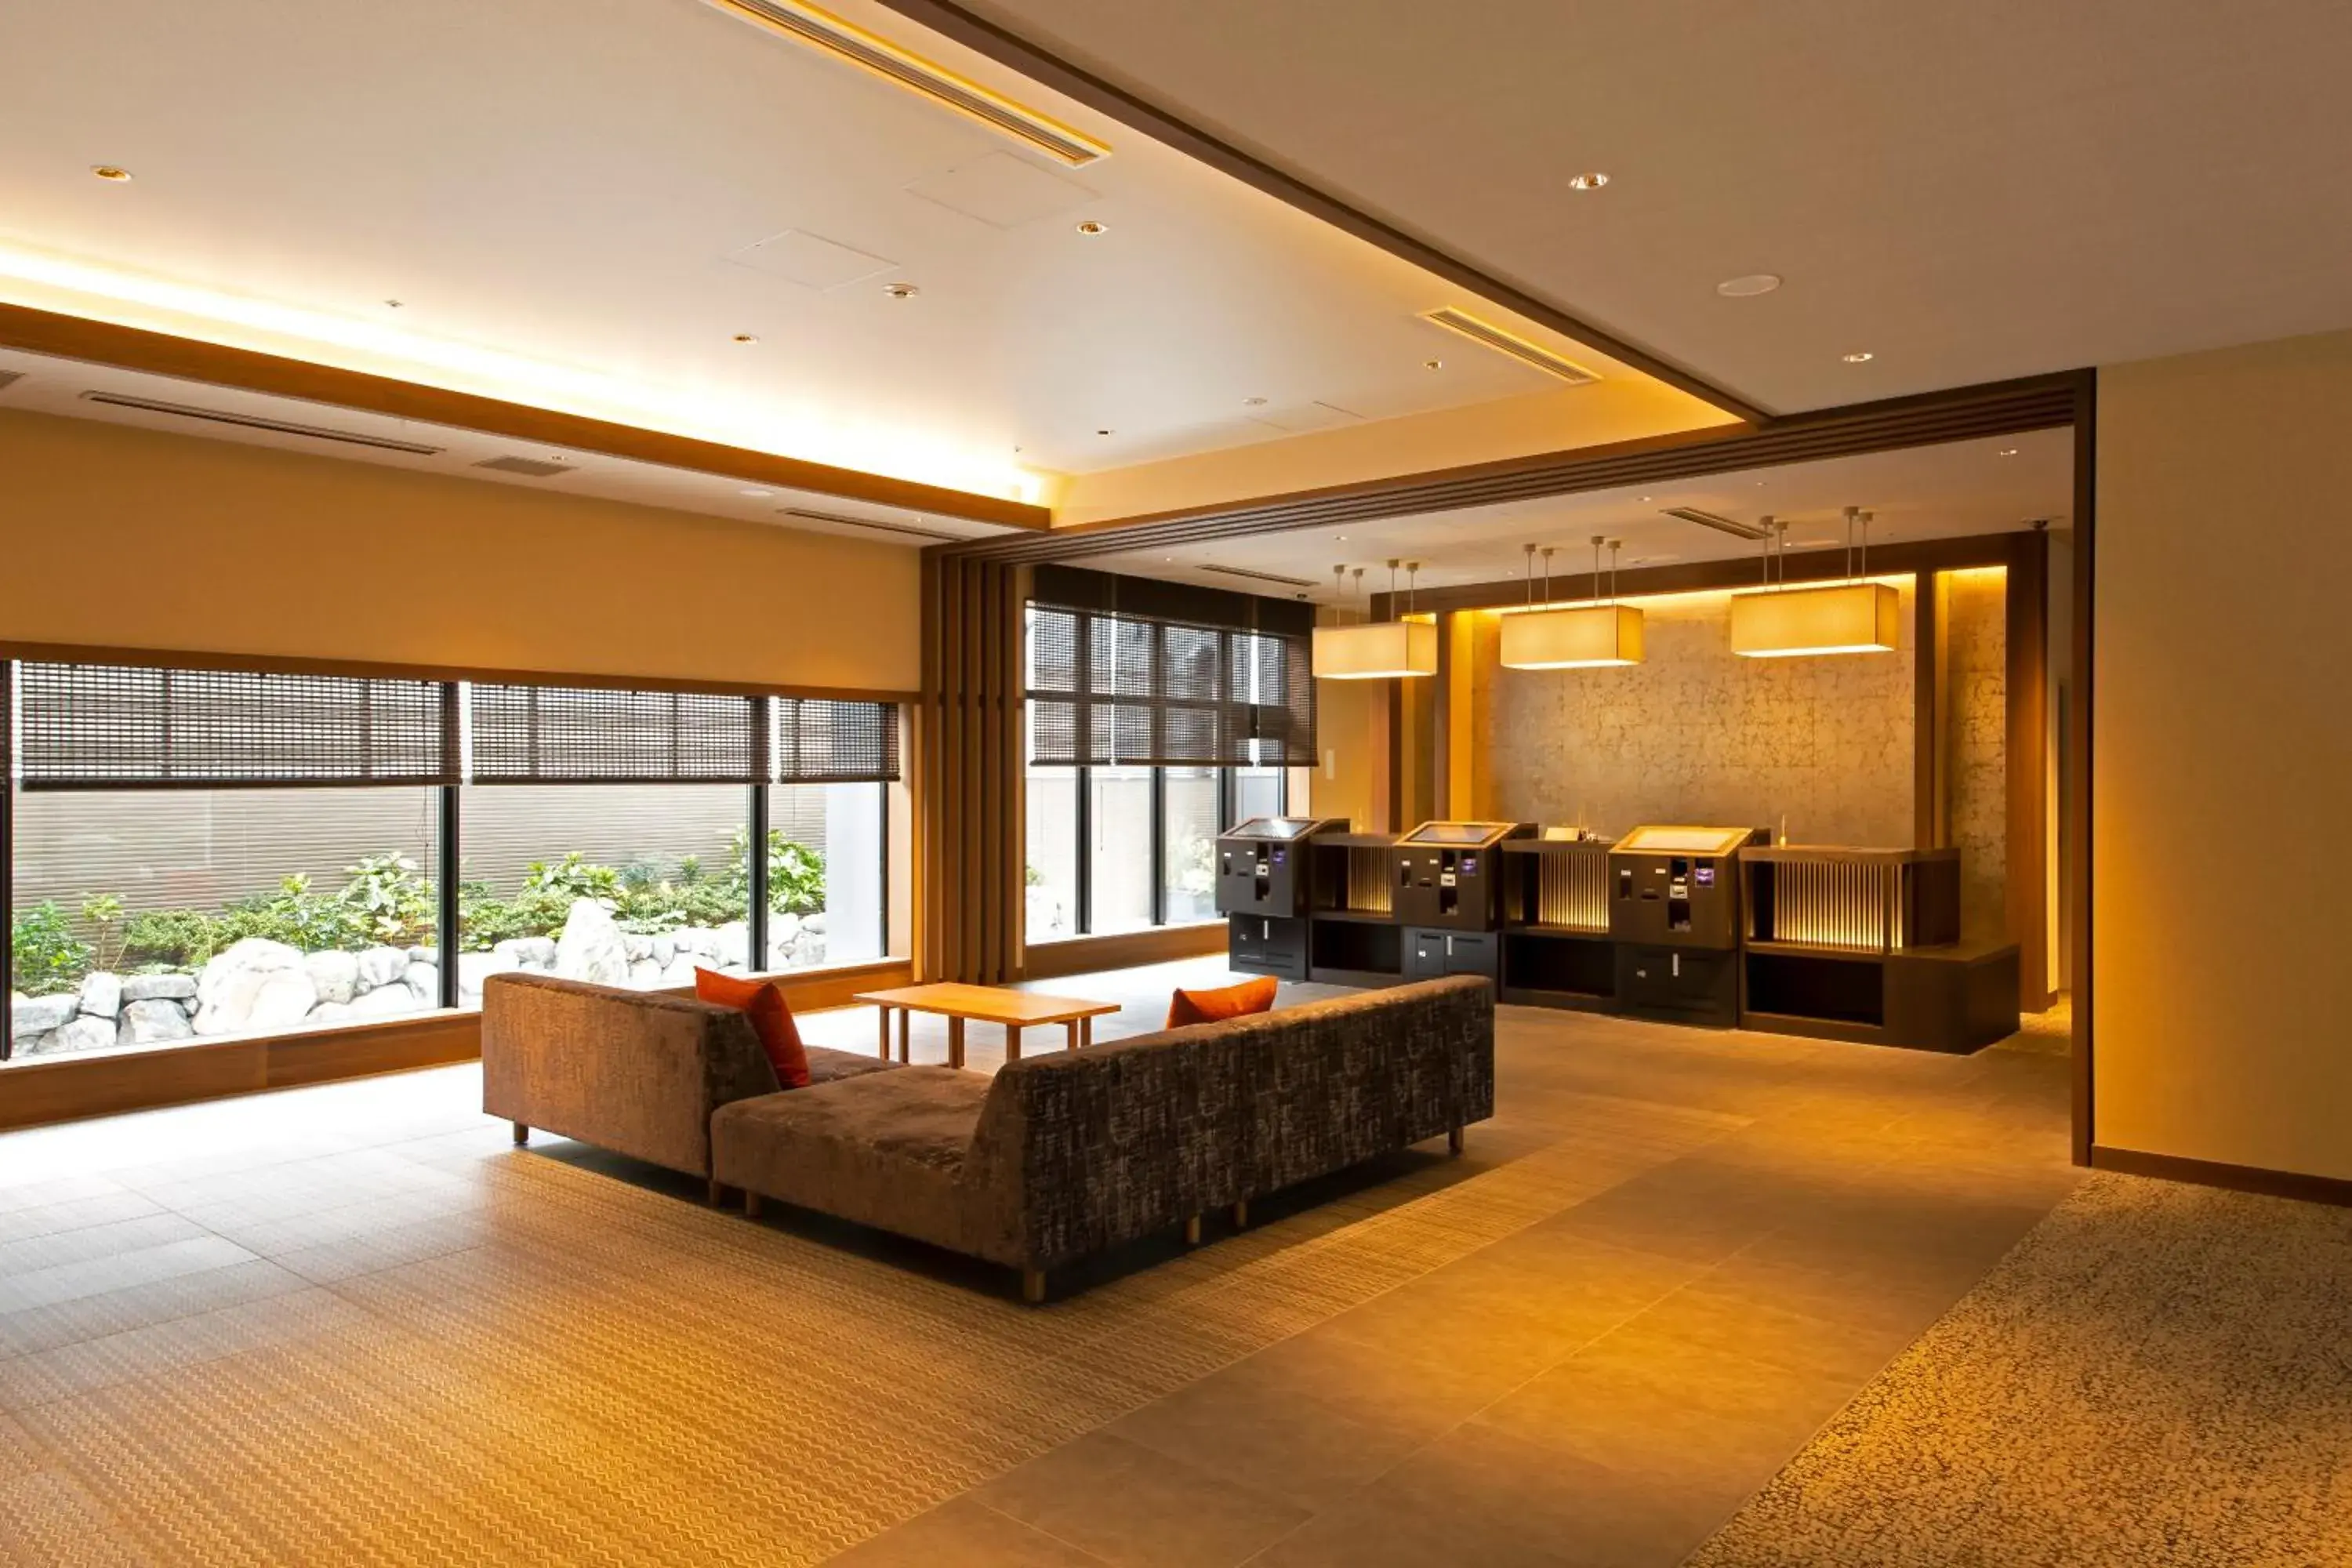 Lobby or reception in Hotel Keihan Kyoto Hachijoguchi